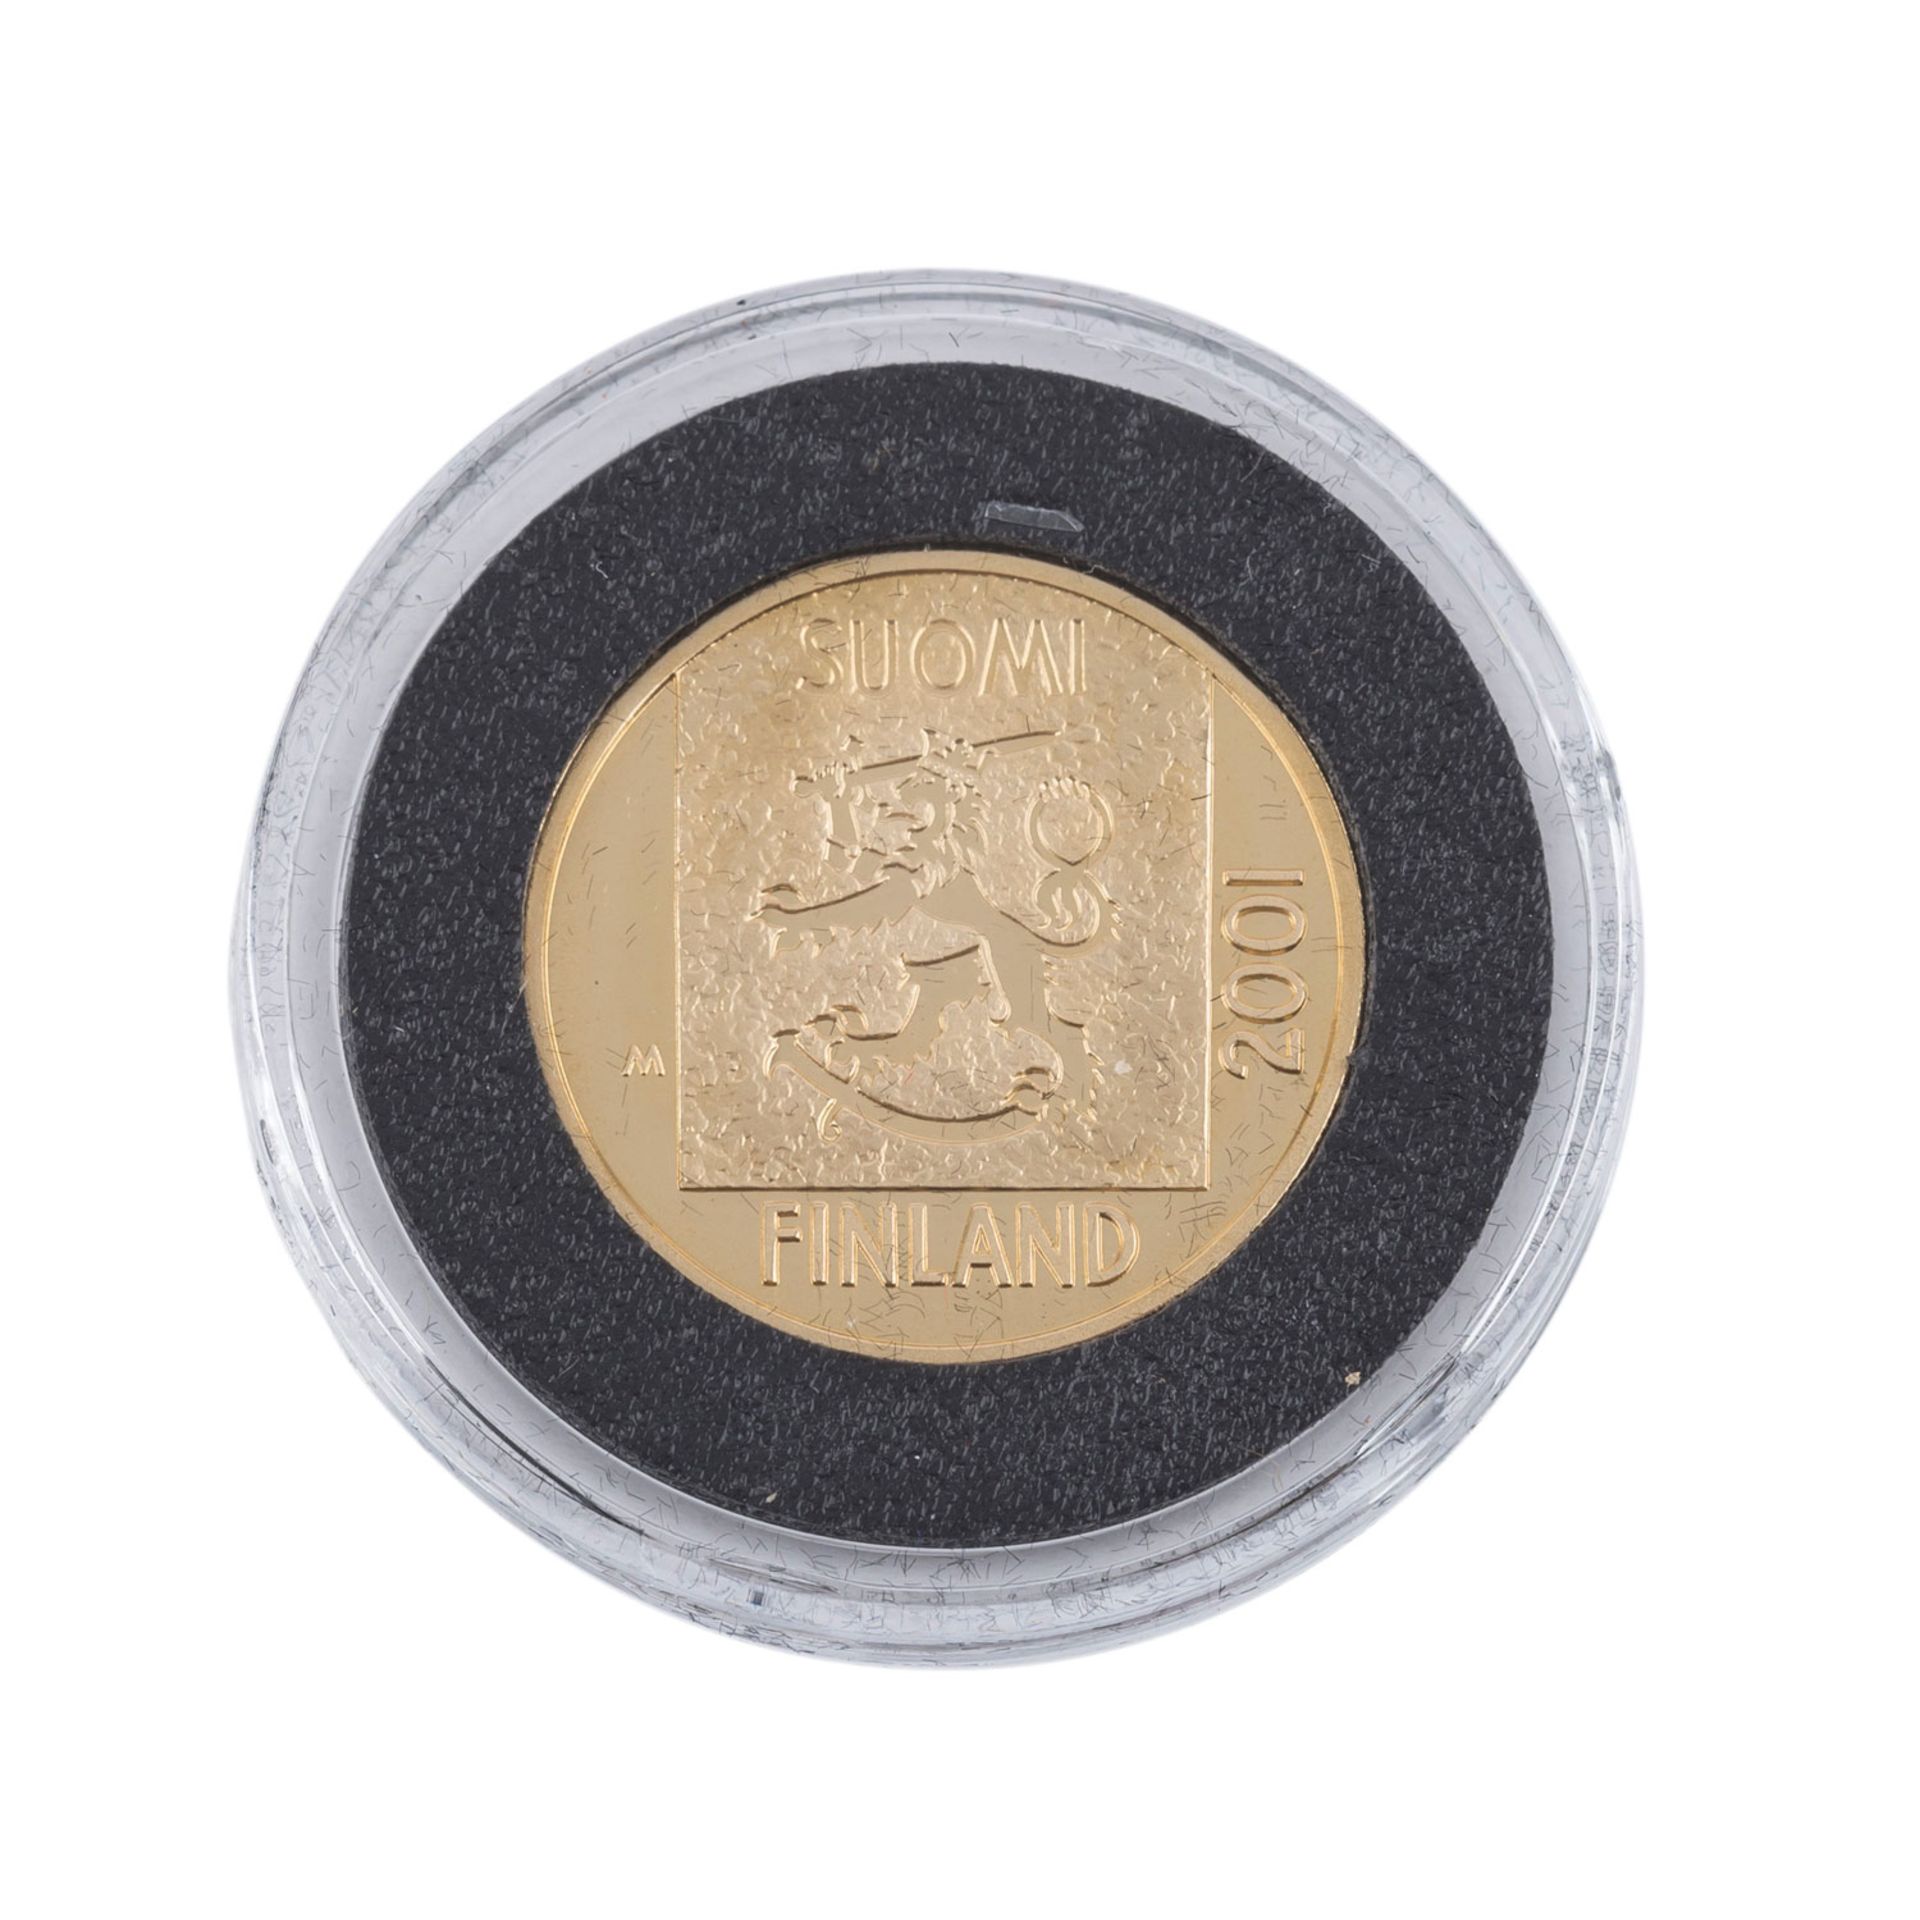 Finnland/GOLD - 1 Markkaa 2001, Zum Abschied der Währung, PP,verkapselt, im Originaletui, mit - Bild 2 aus 3